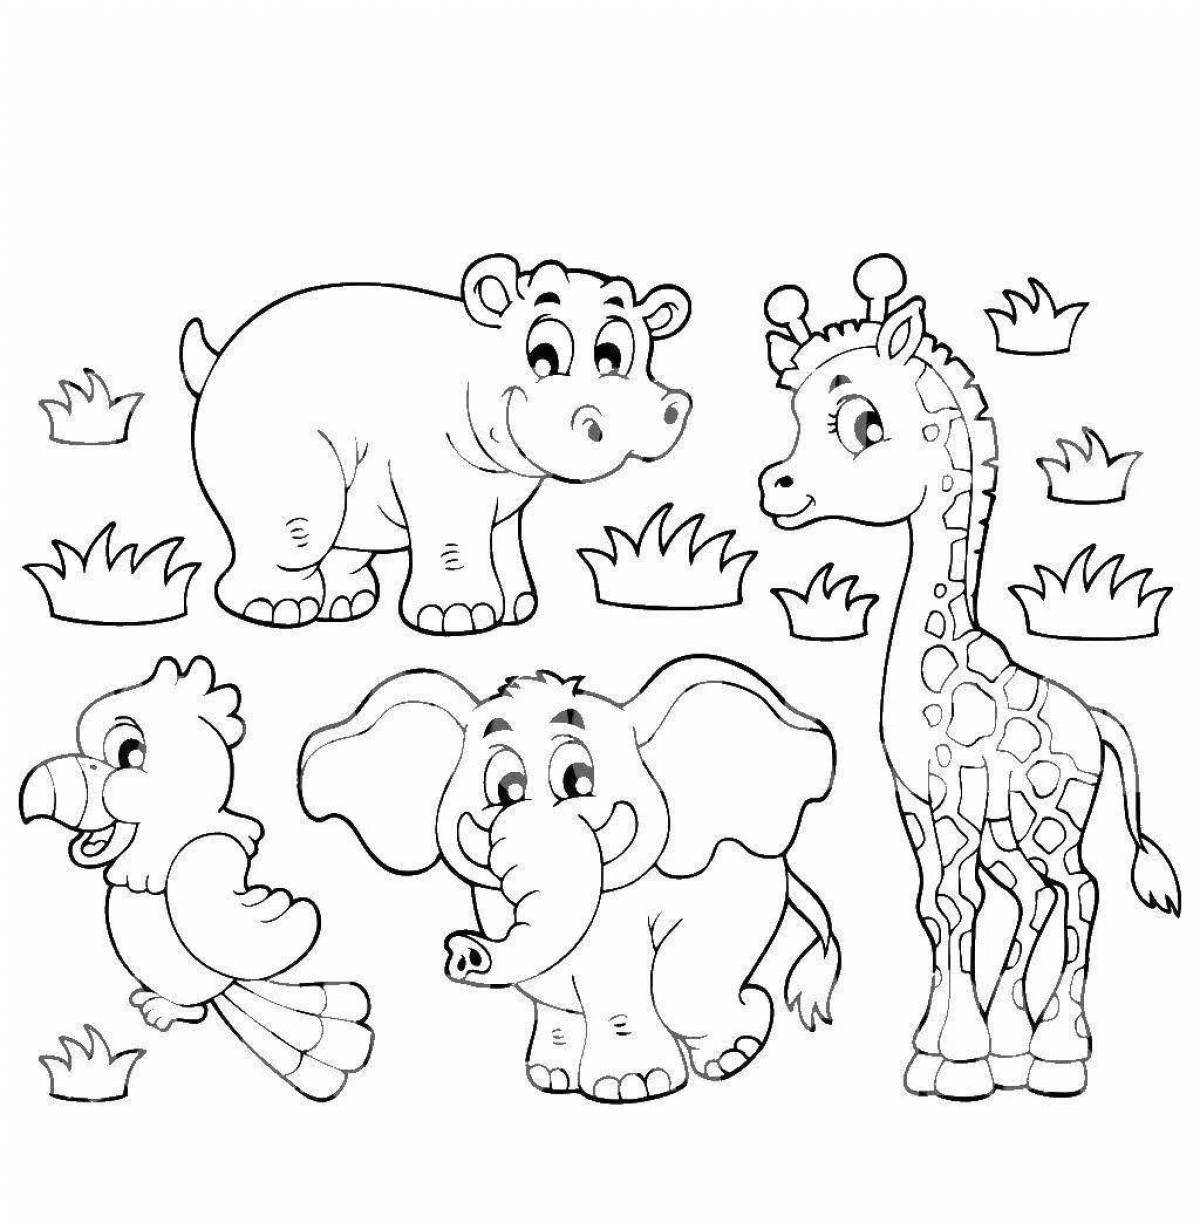 Веселая раскраска африканских животных для детей 3-4 лет